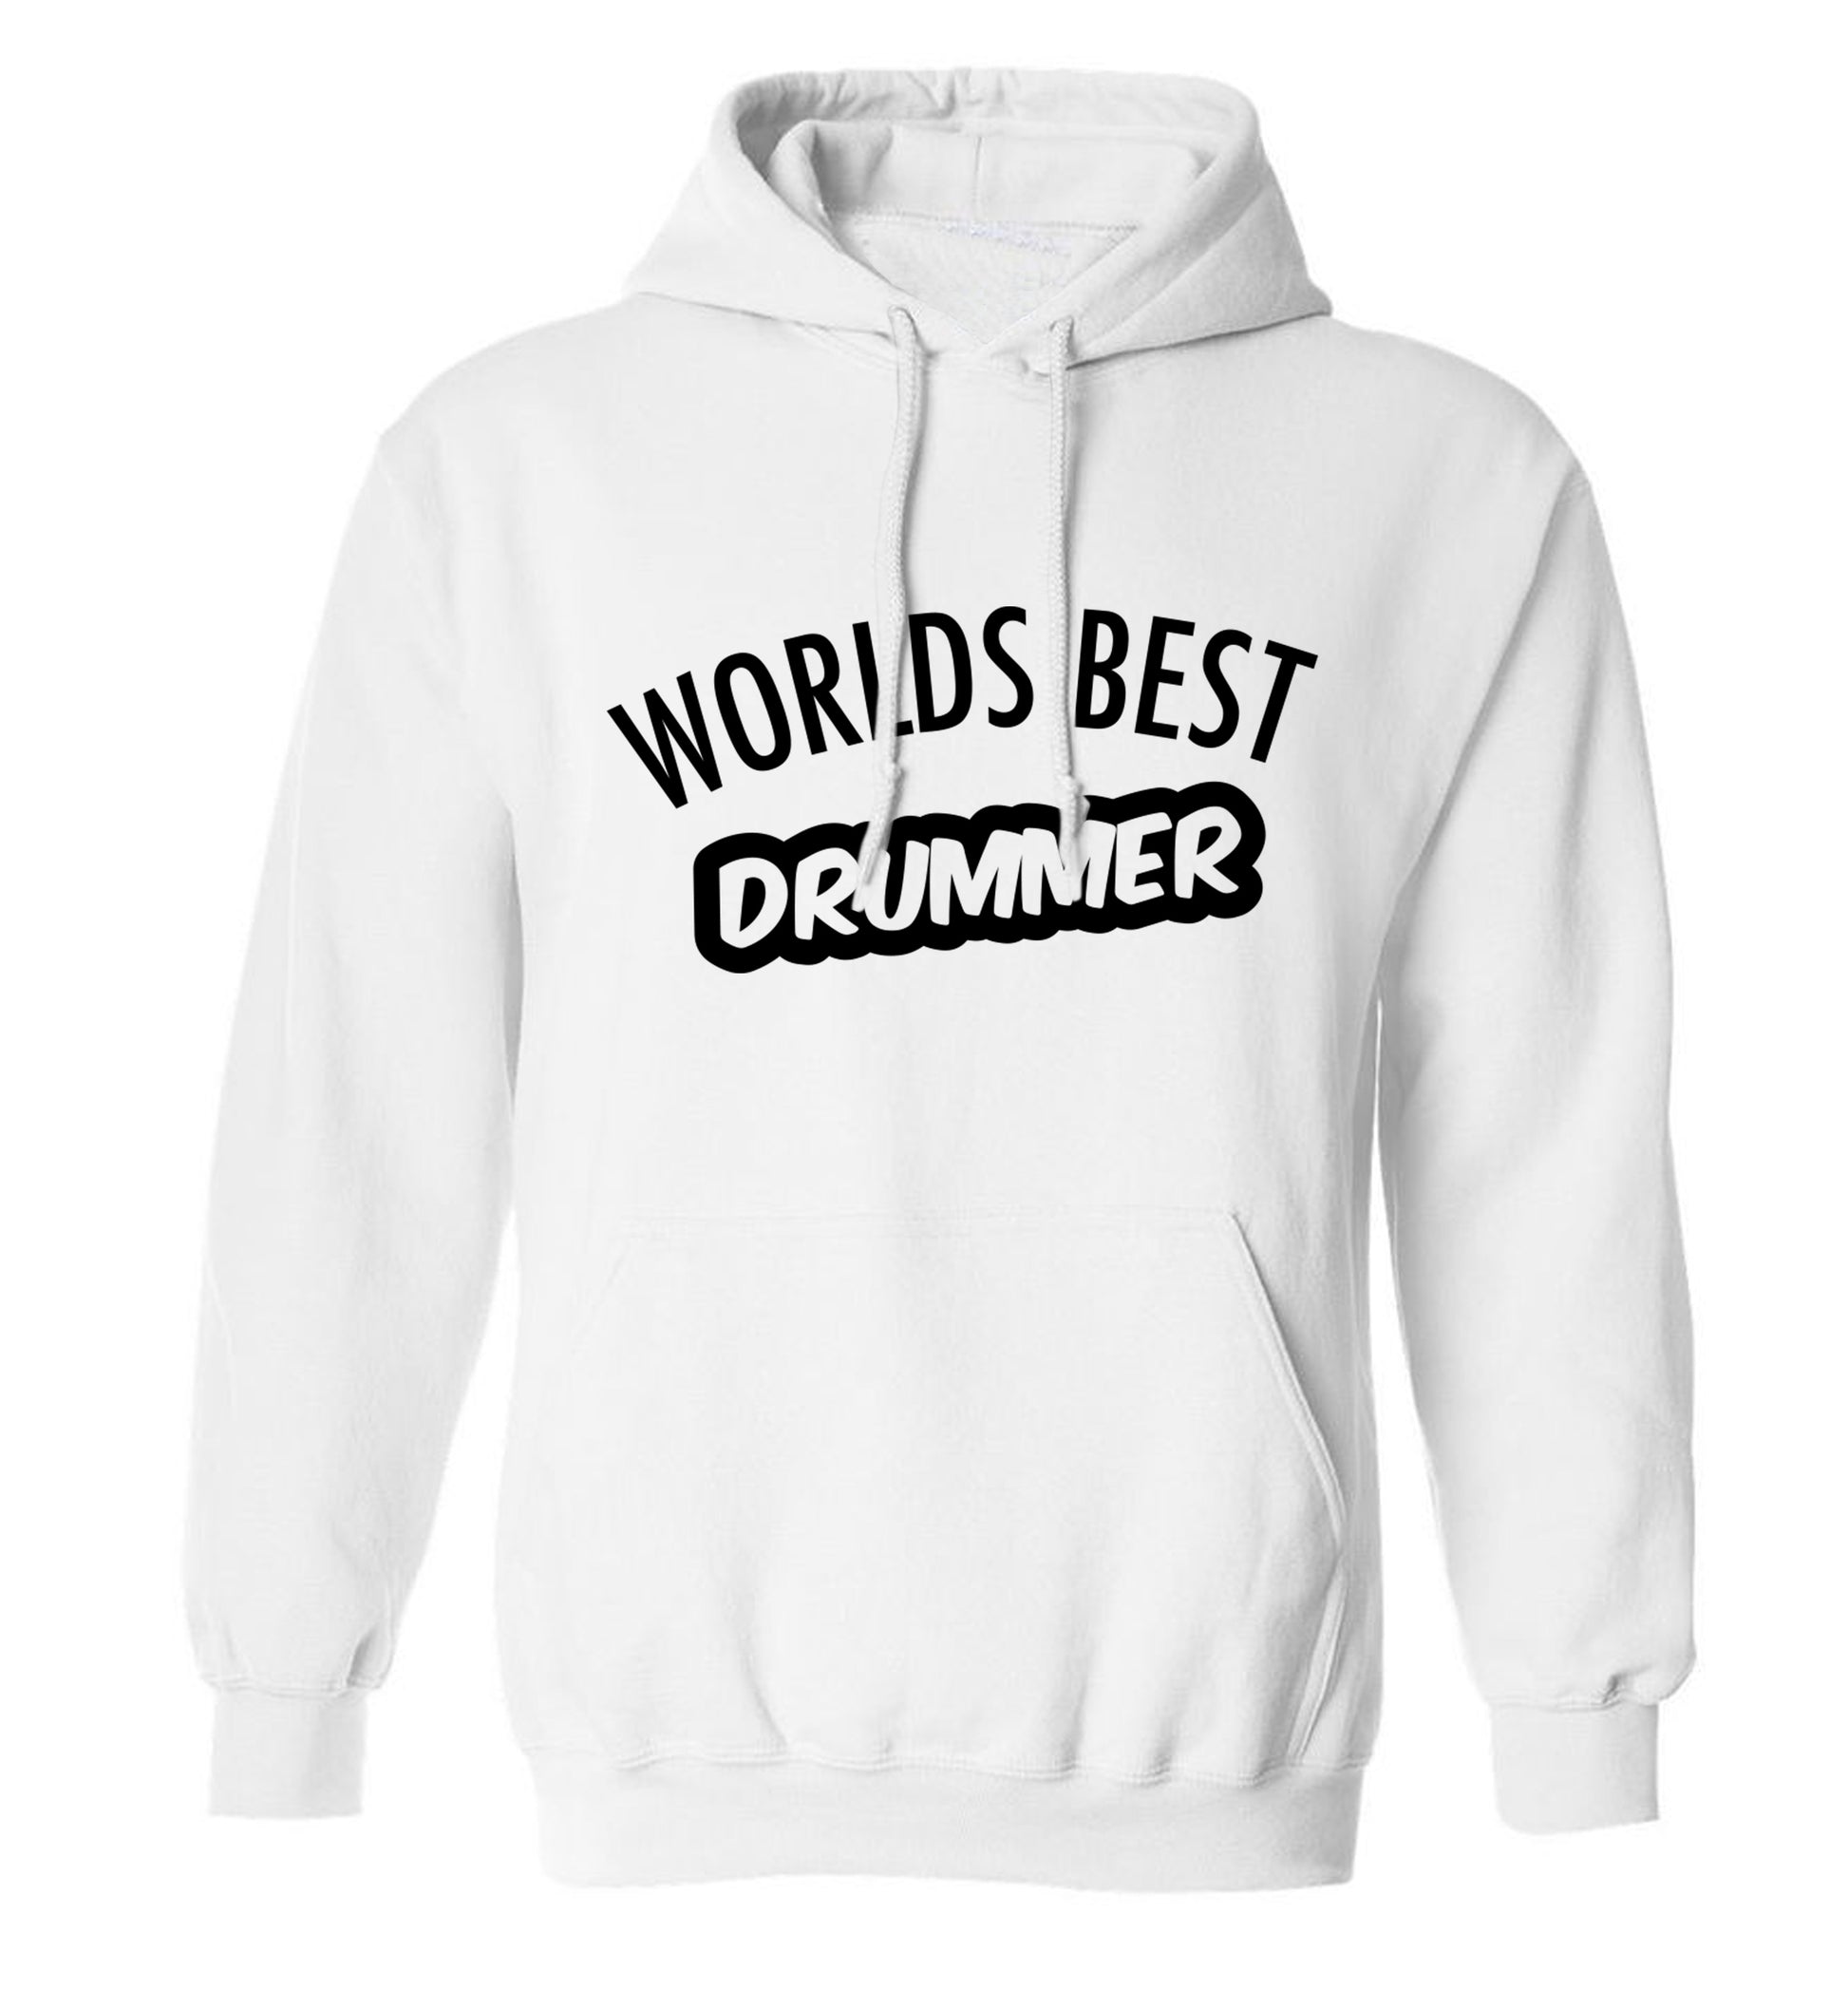 Worlds best drummer adults unisex white hoodie 2XL